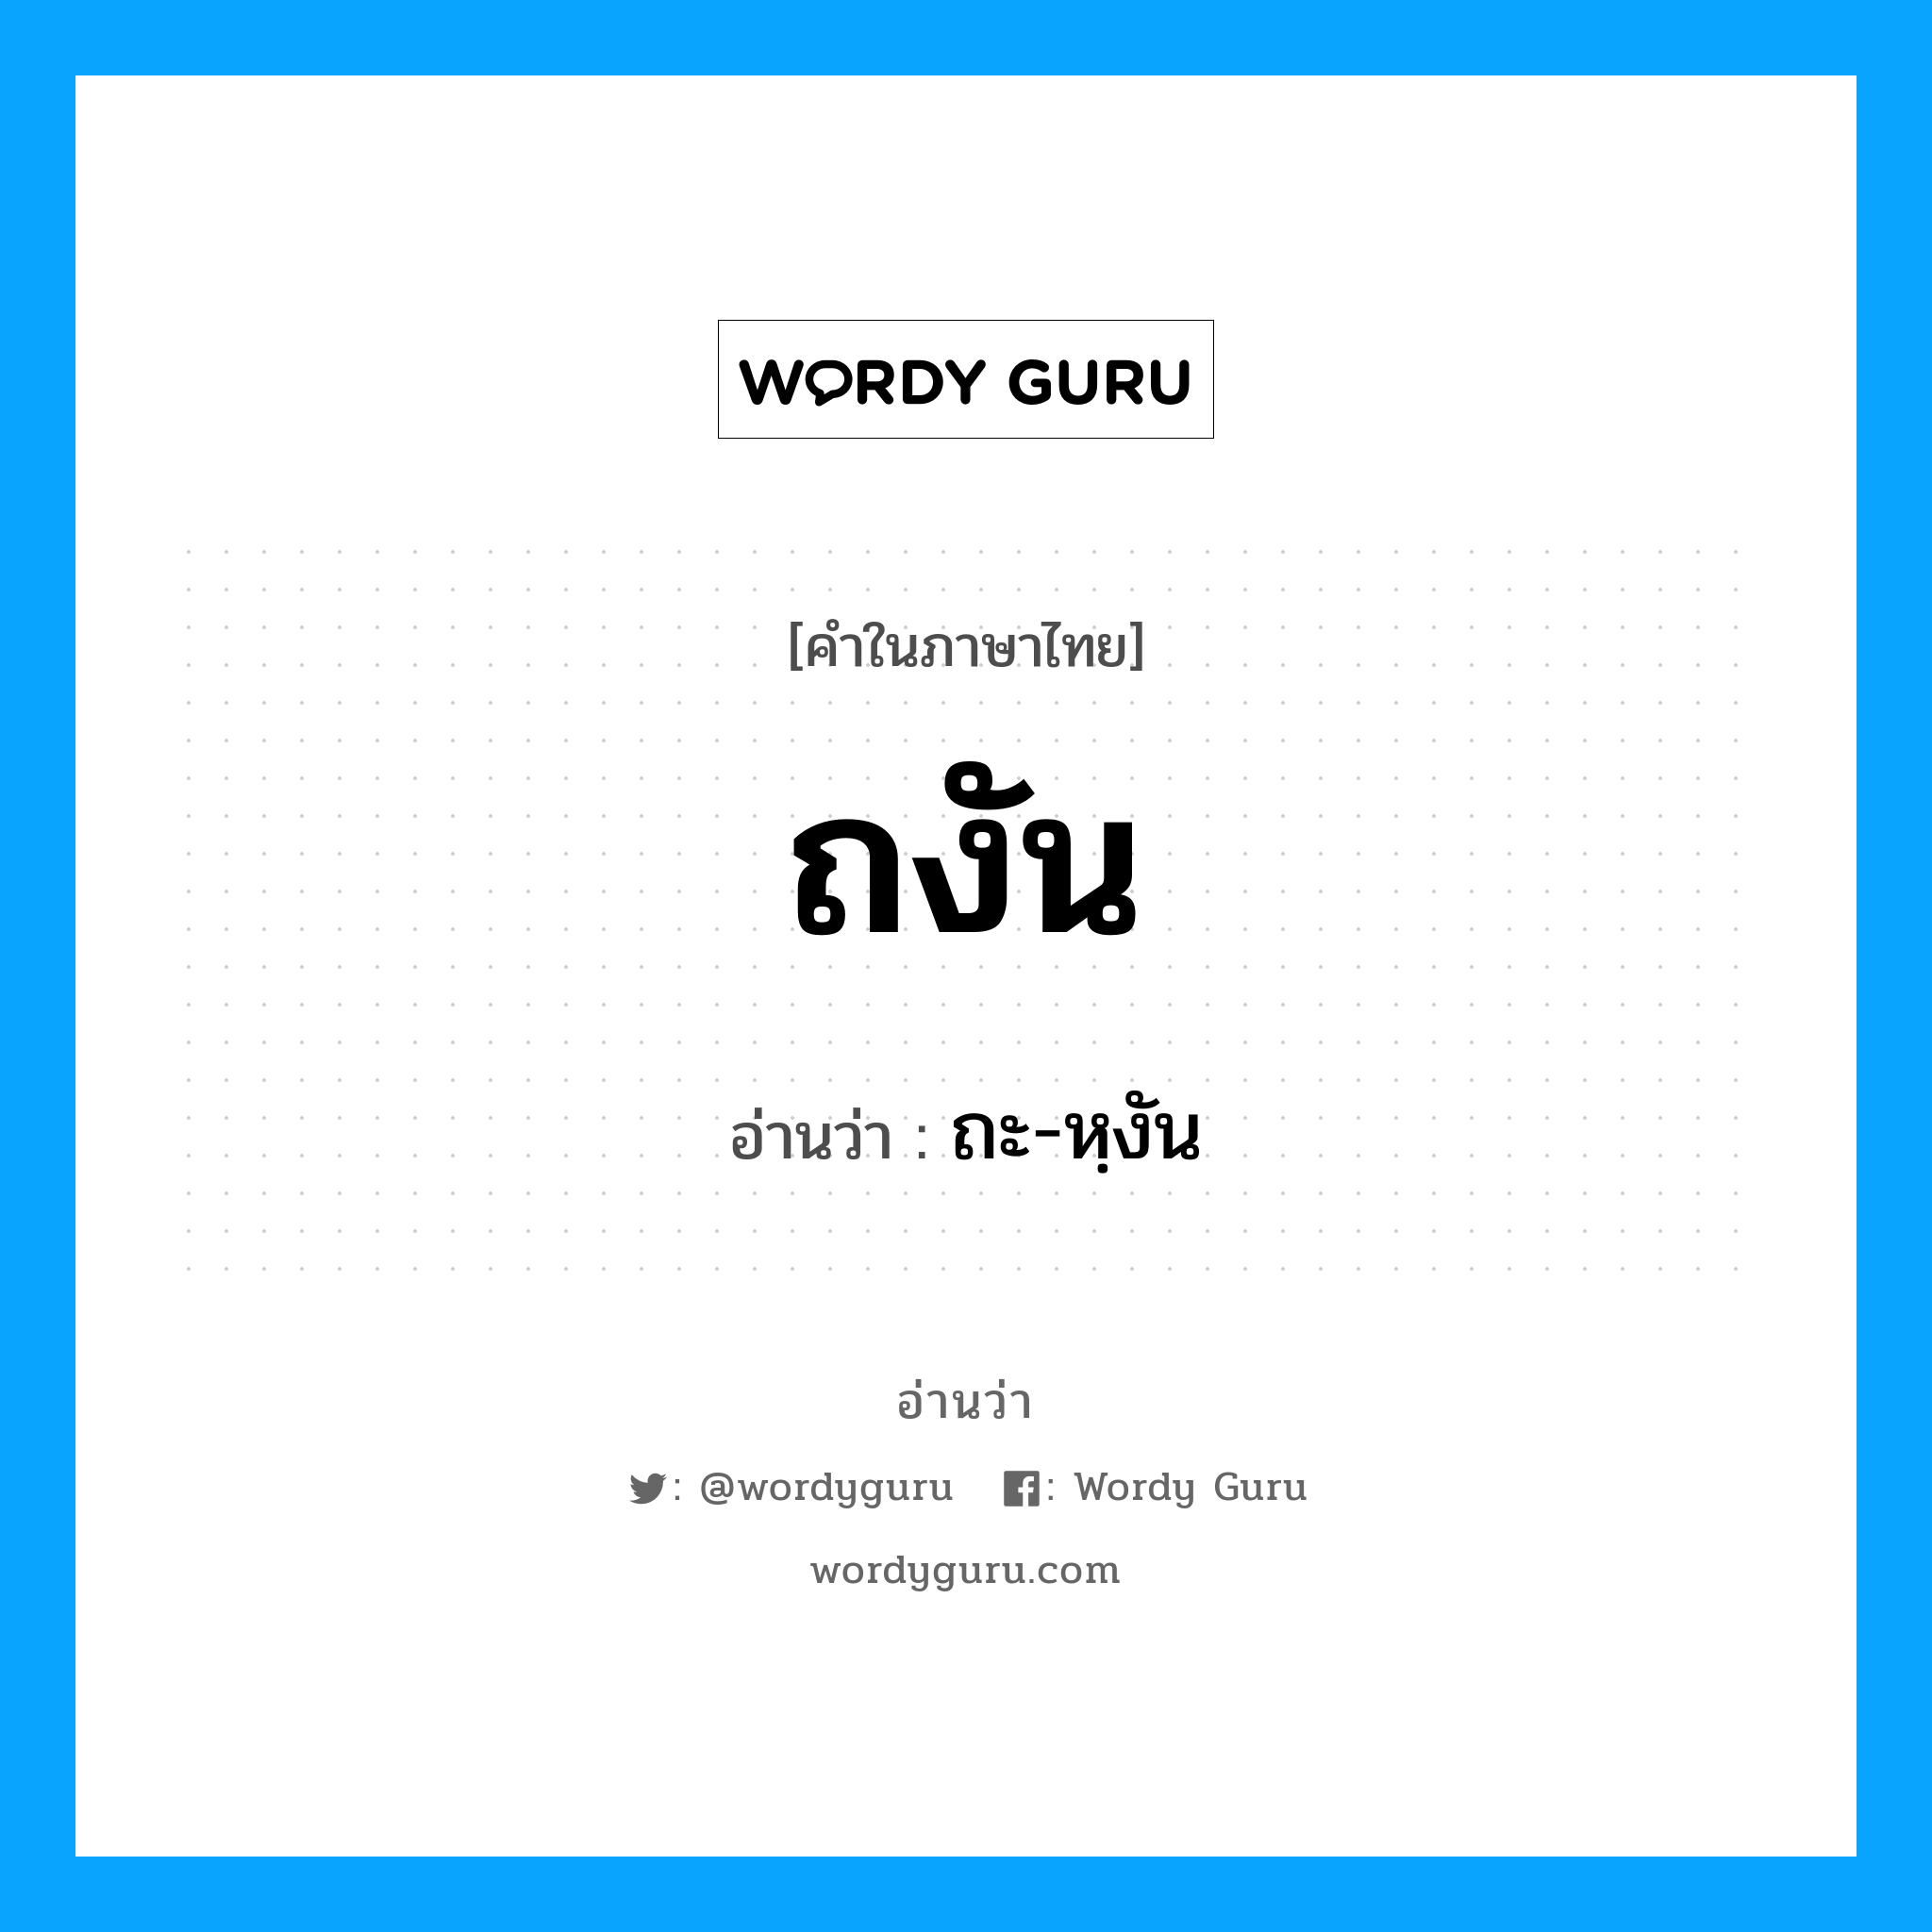 ถะ-หฺงัน เป็นคำอ่านของคำไหน?, คำในภาษาไทย ถะ-หฺงัน อ่านว่า ถงัน